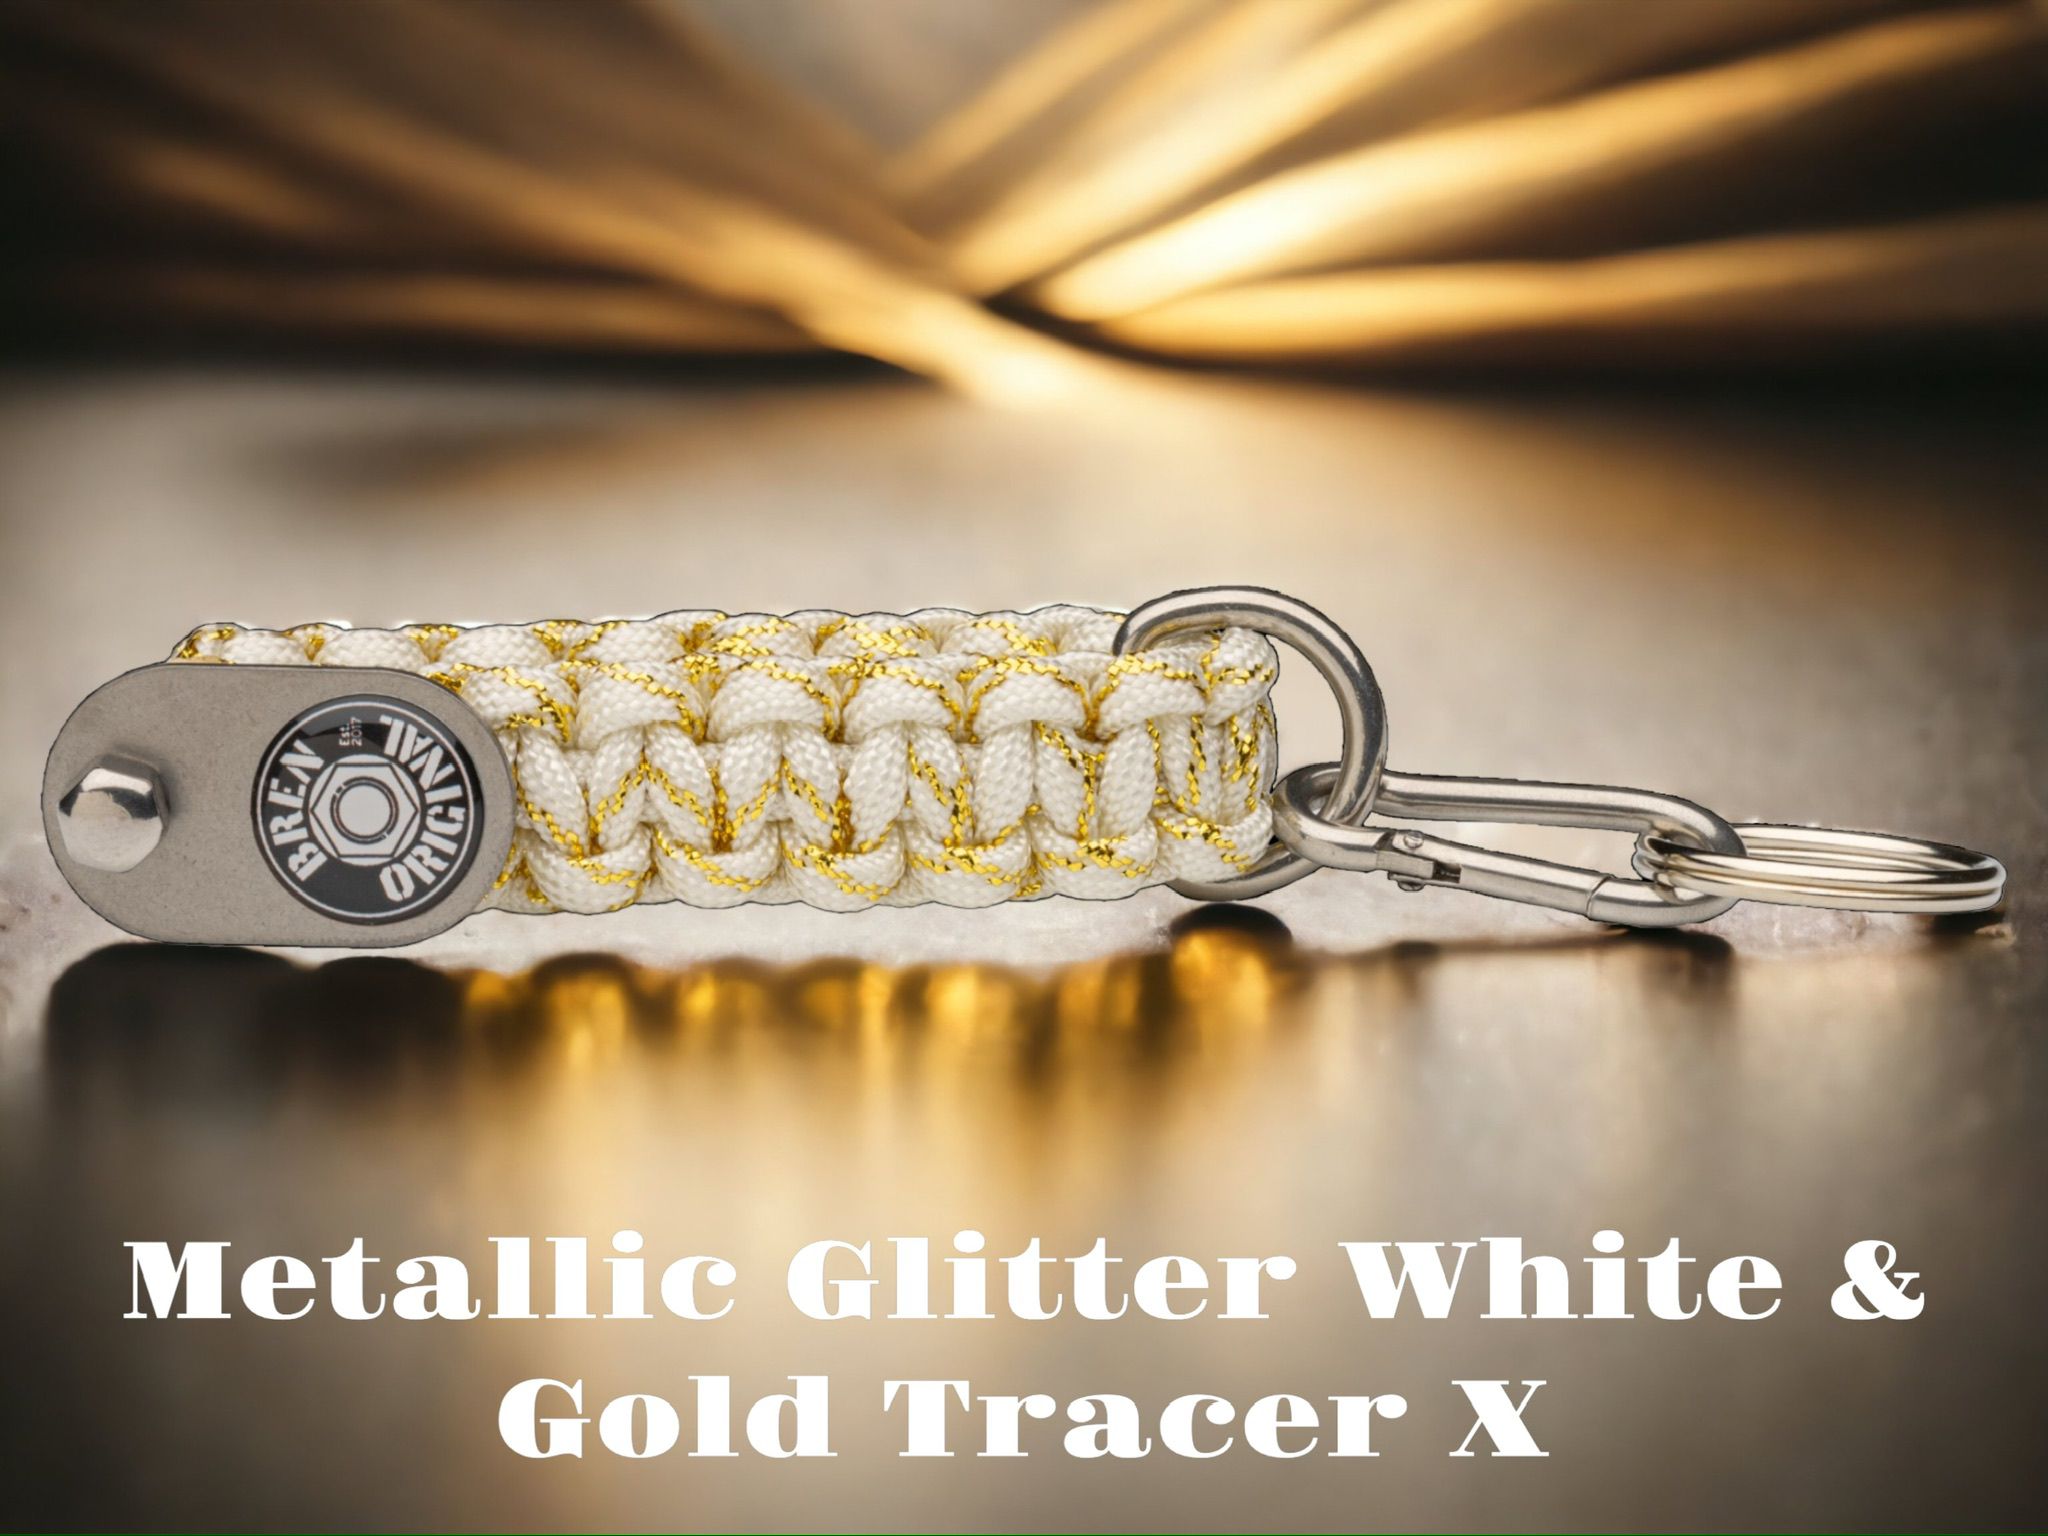 Metallic Glitter White Gold TracerX